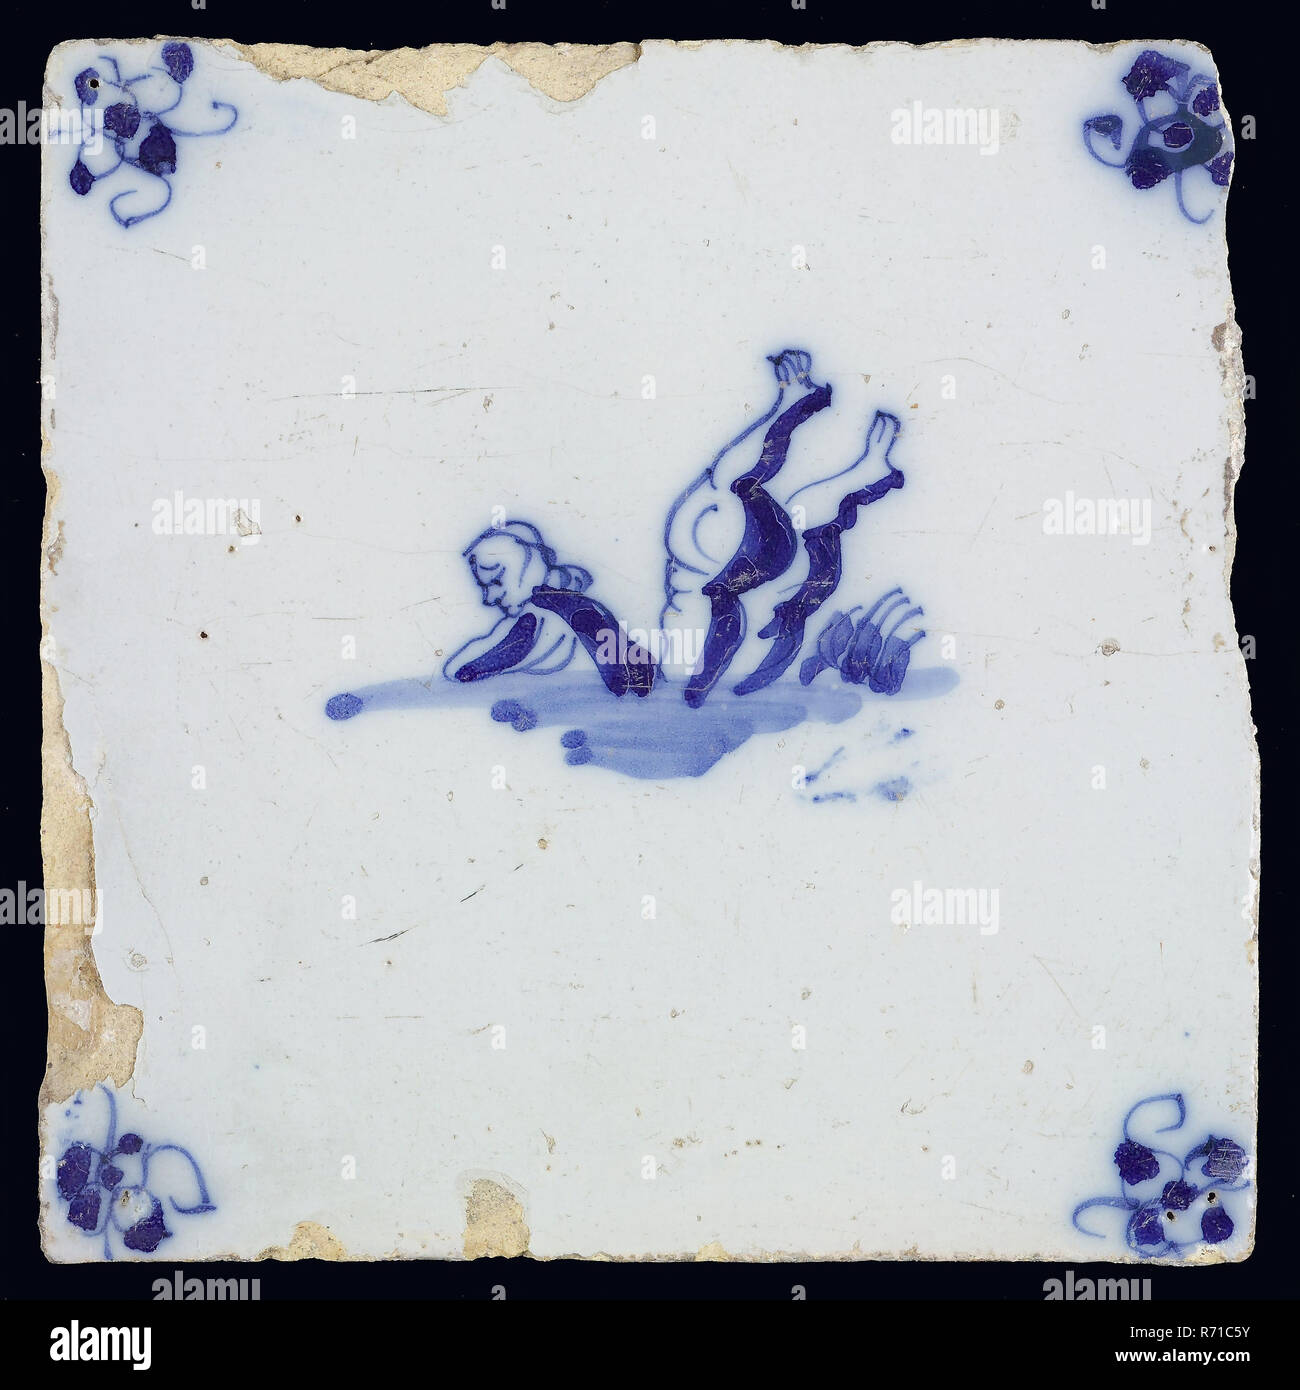 Meer Kreatur Fliesen, in Blau auf Weiß, Oberkörper von Mann und zwei Beinen kopfüber im Wasser, Ecke Muster Spinne, wandfliese Kachel skulptur keramik Steingut glasiert, gebackene 2 x Glasierte lackiert Stockfoto